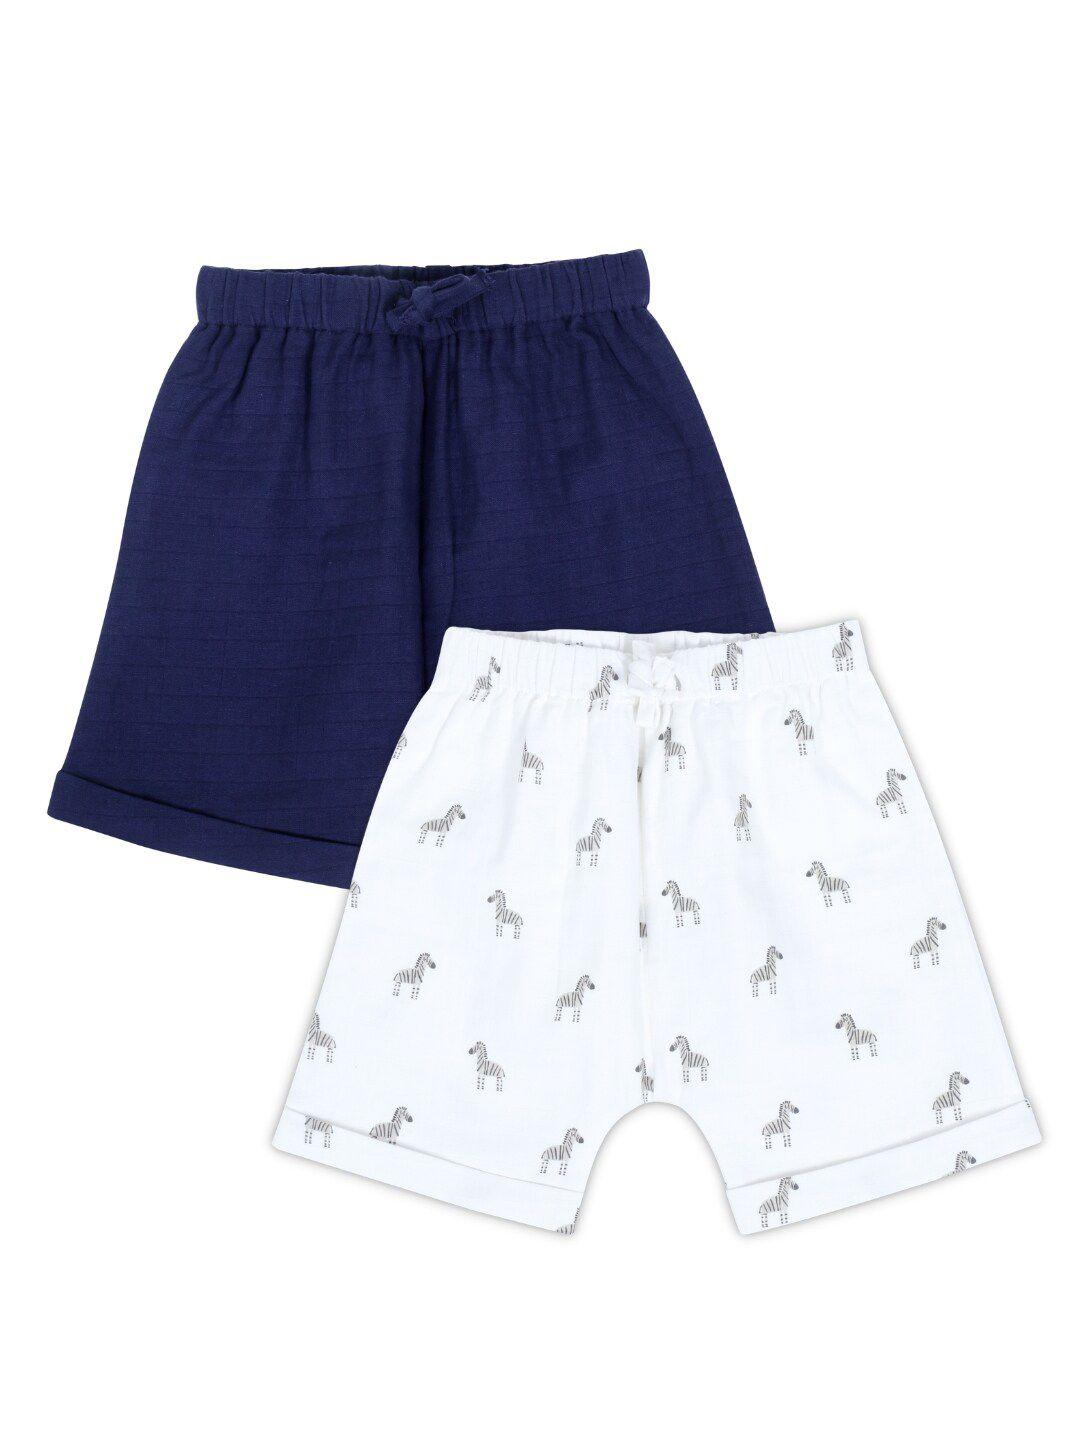 haus & kinder unisex kids set of 2 printed shorts